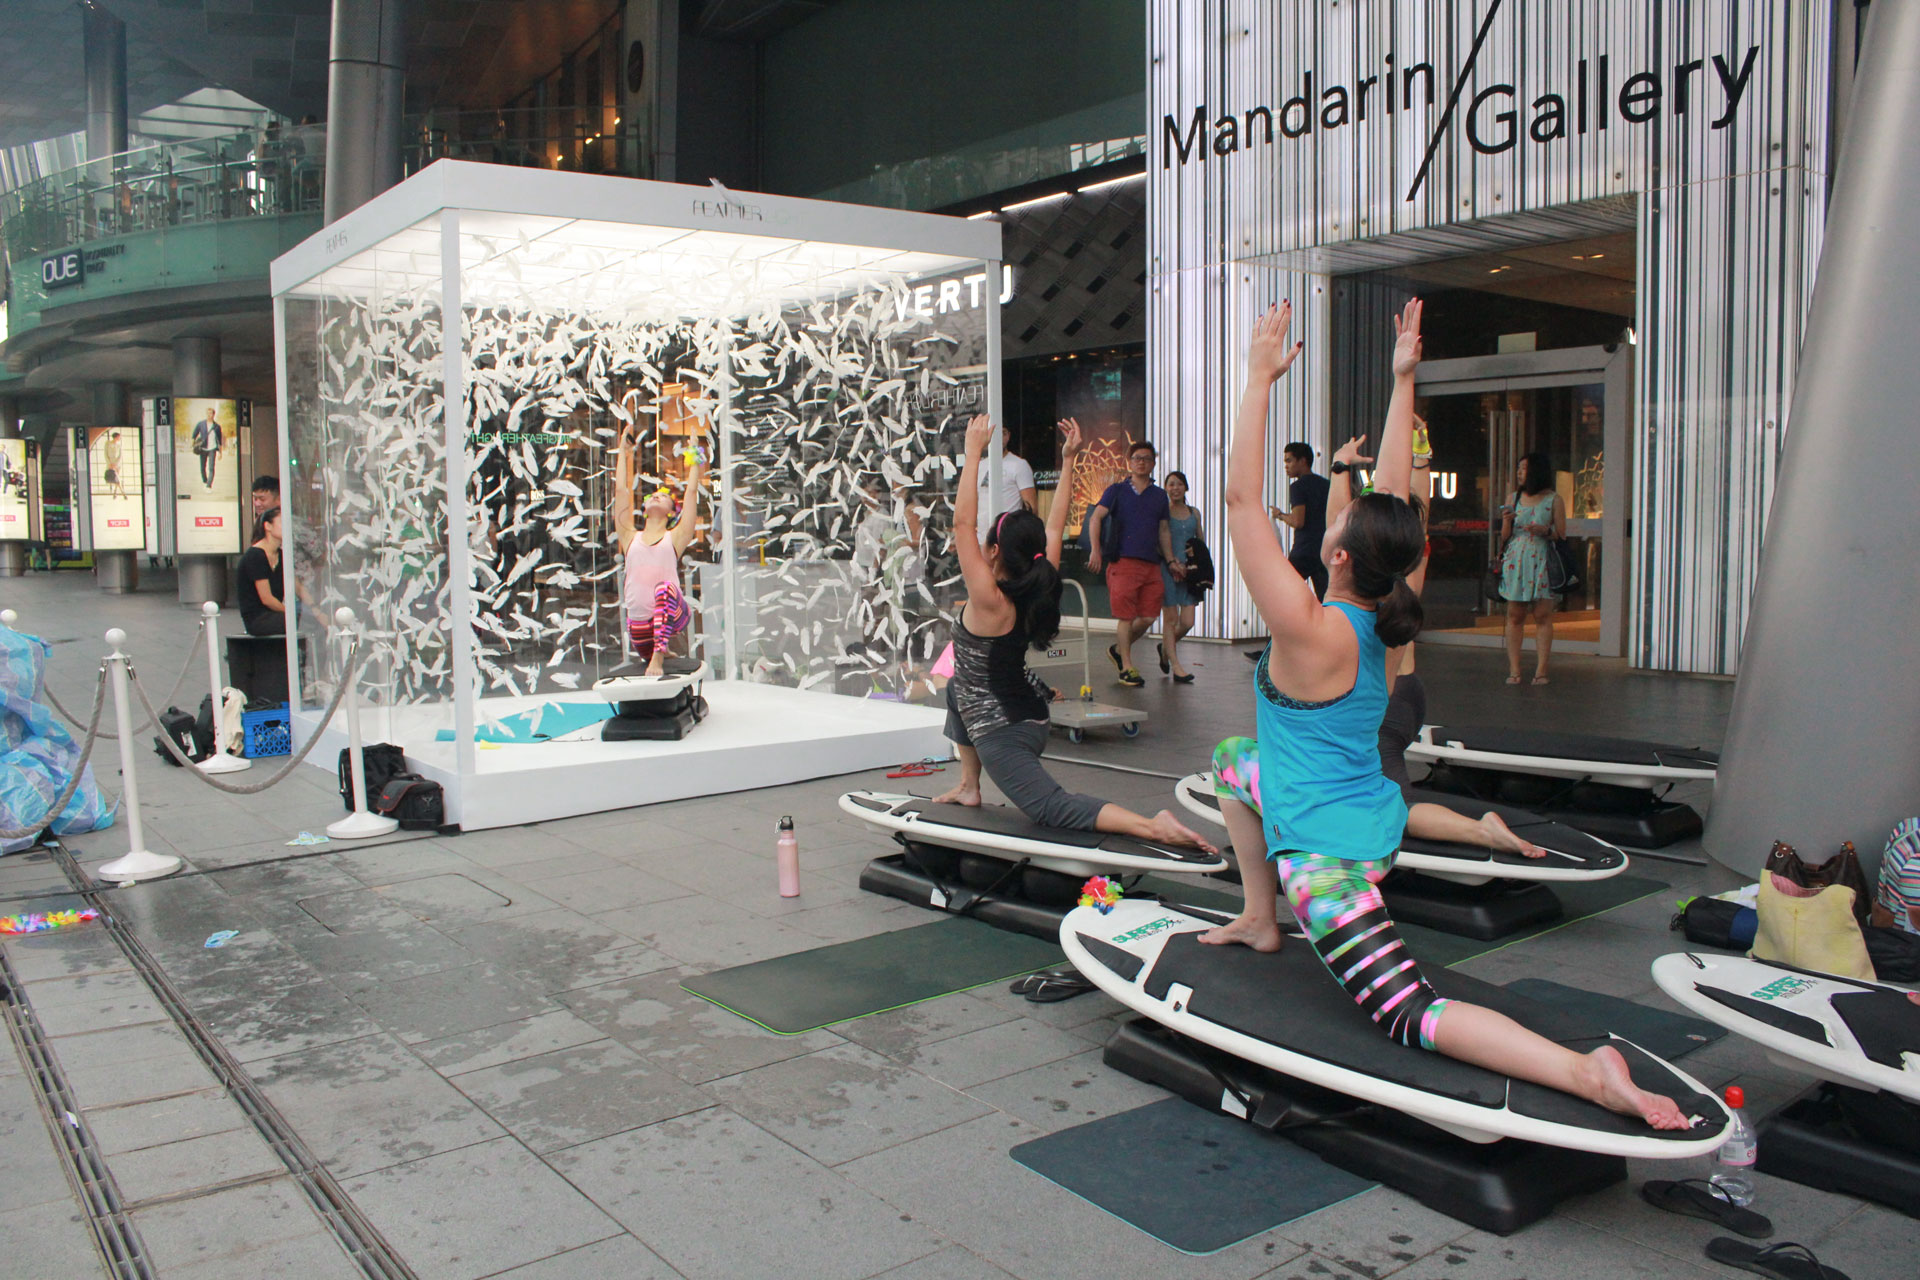 Yoga post on SURFSET board at mandarin gallery